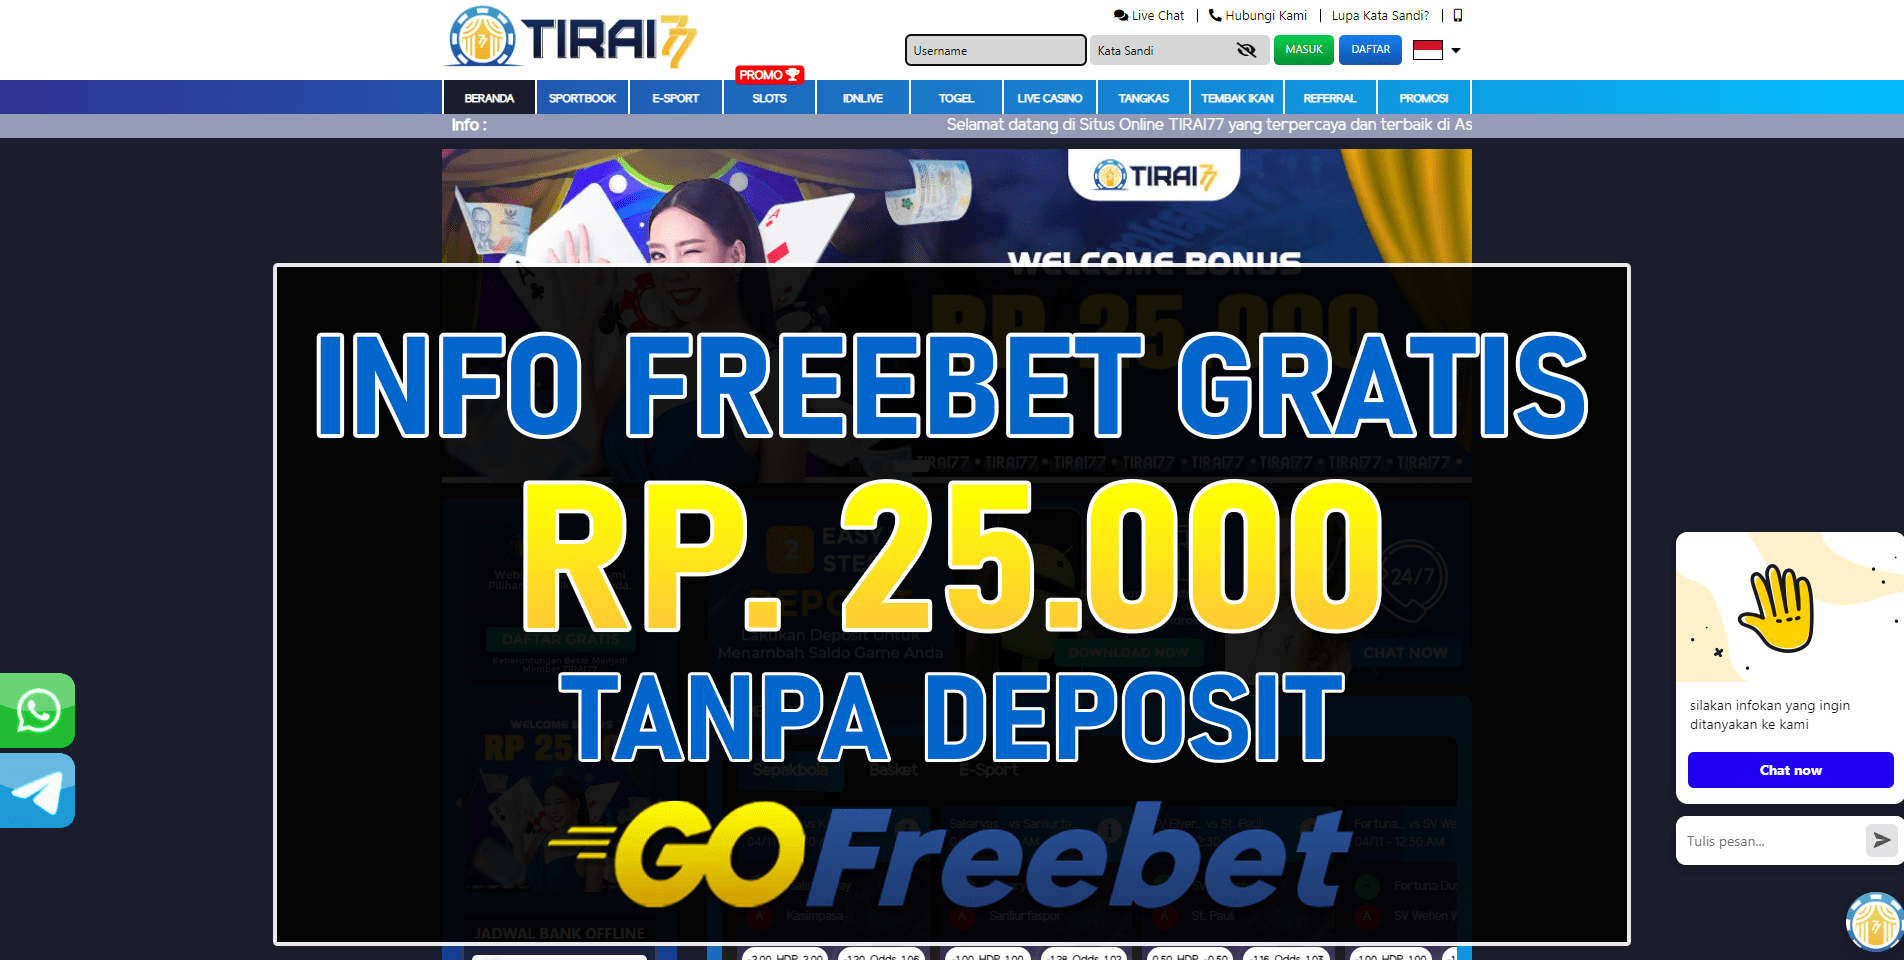 Tirai77 Freebet Gratis Rp 25.000 Tanpa Syarat Deposit Terbaru